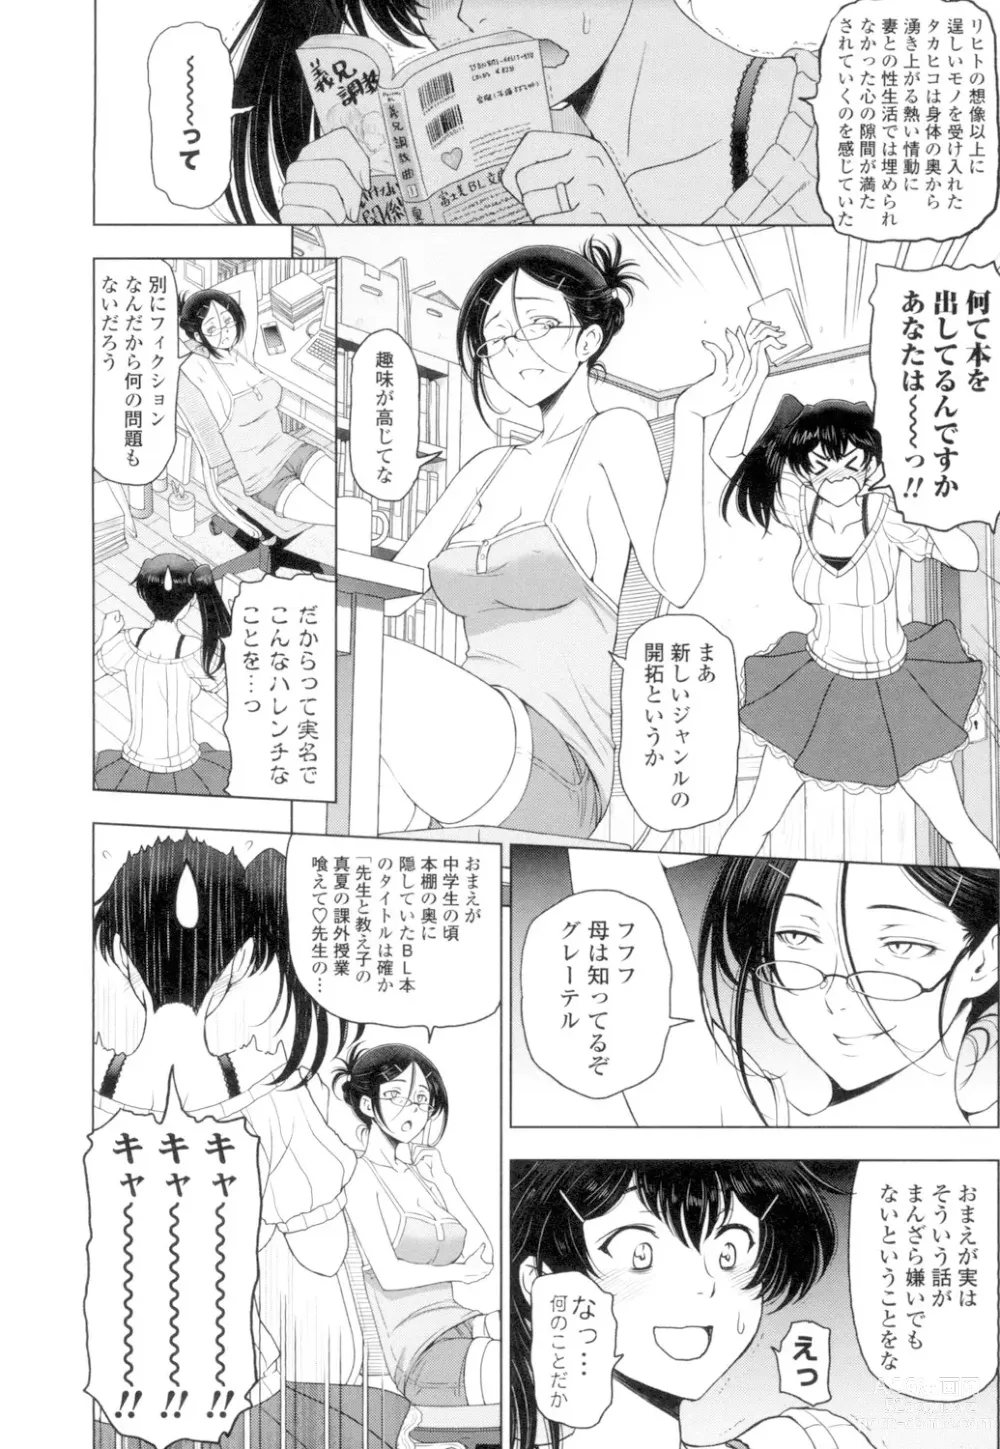 Page 212 of manga Natsu-jiru ~Ase ni Mamirete Gucchagucha~